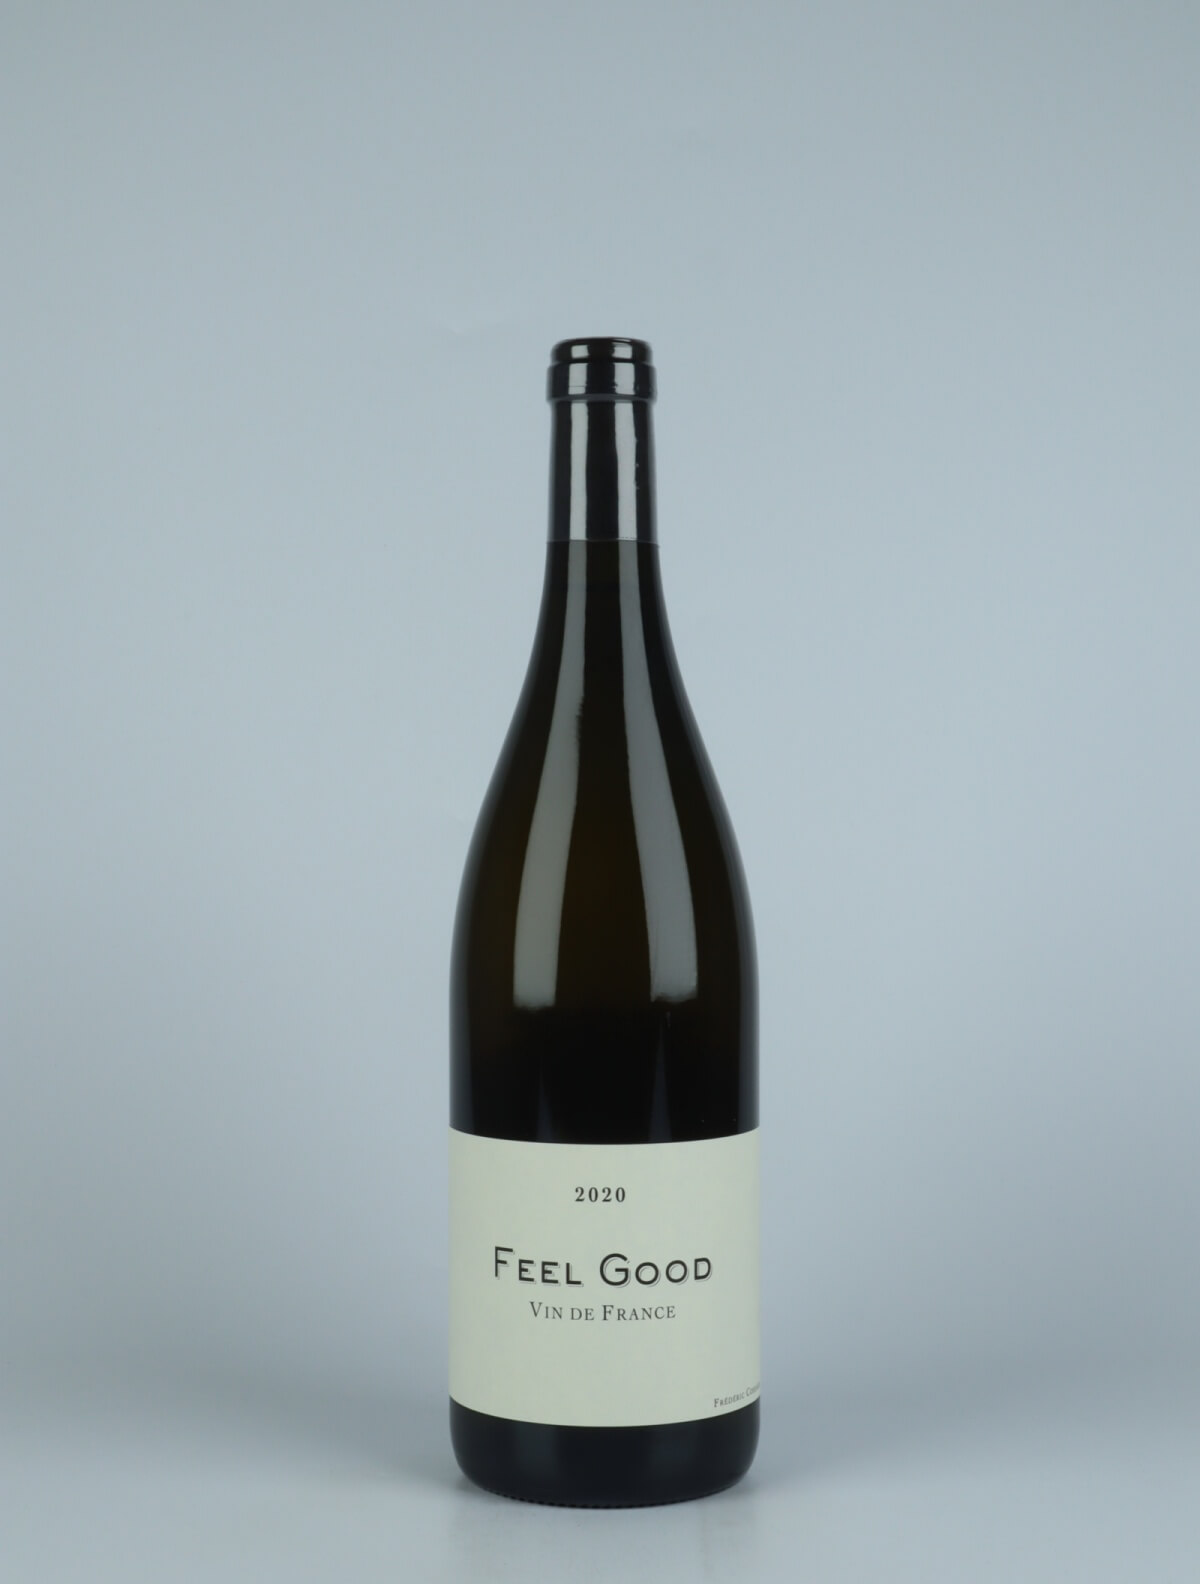 En flaske 2020 Feel Good - Qvevris Hvidvin fra Frédéric Cossard, Jura i Frankrig